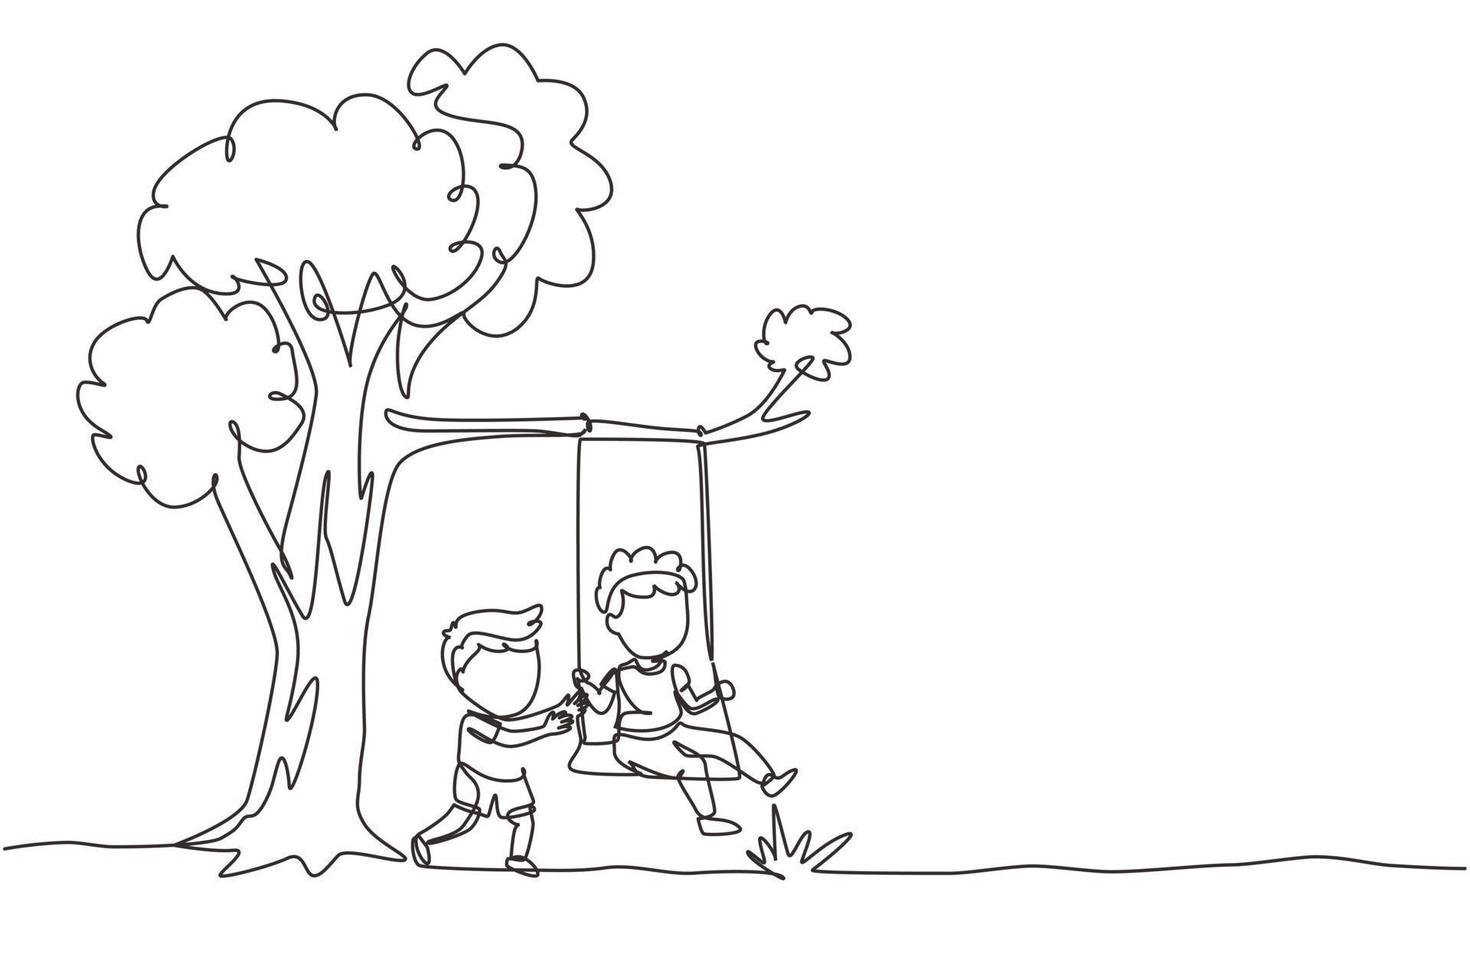 enda kontinuerlig linje ritning glada två pojkar spelar på träd swing. glada barn på att gunga under ett träd. barn som leker på lekplatsen. dynamisk en rad rita grafisk design vektorillustration vektor